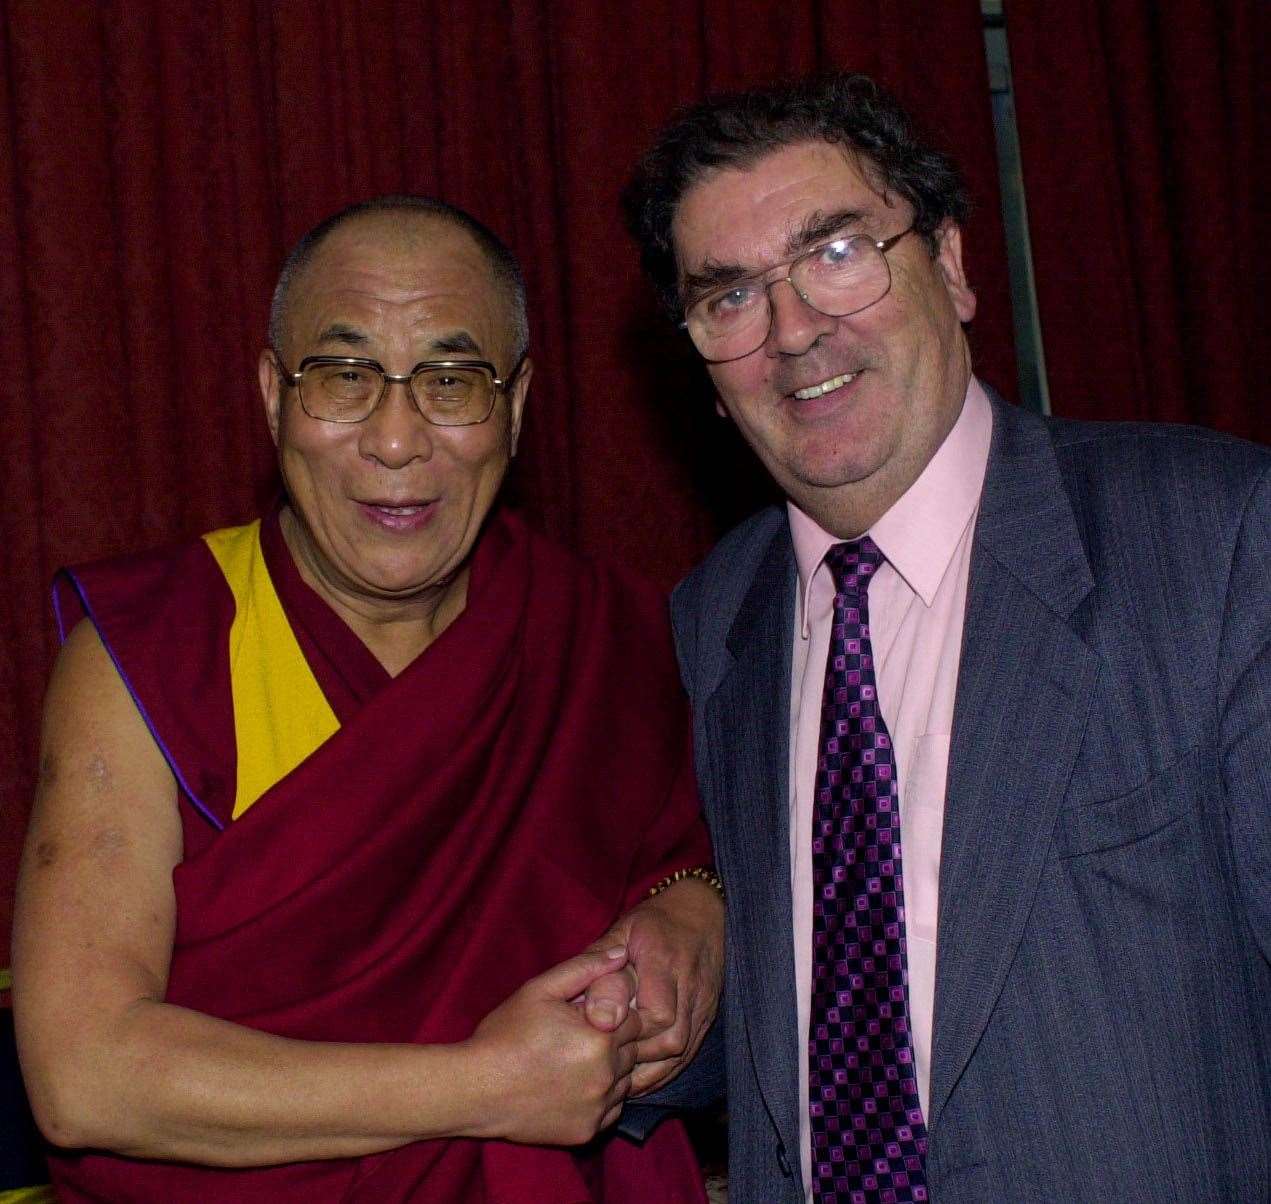 Dalai Lama meeting with fellow Nobel Peace Laureate John Hume (Martin McCullough/PA)